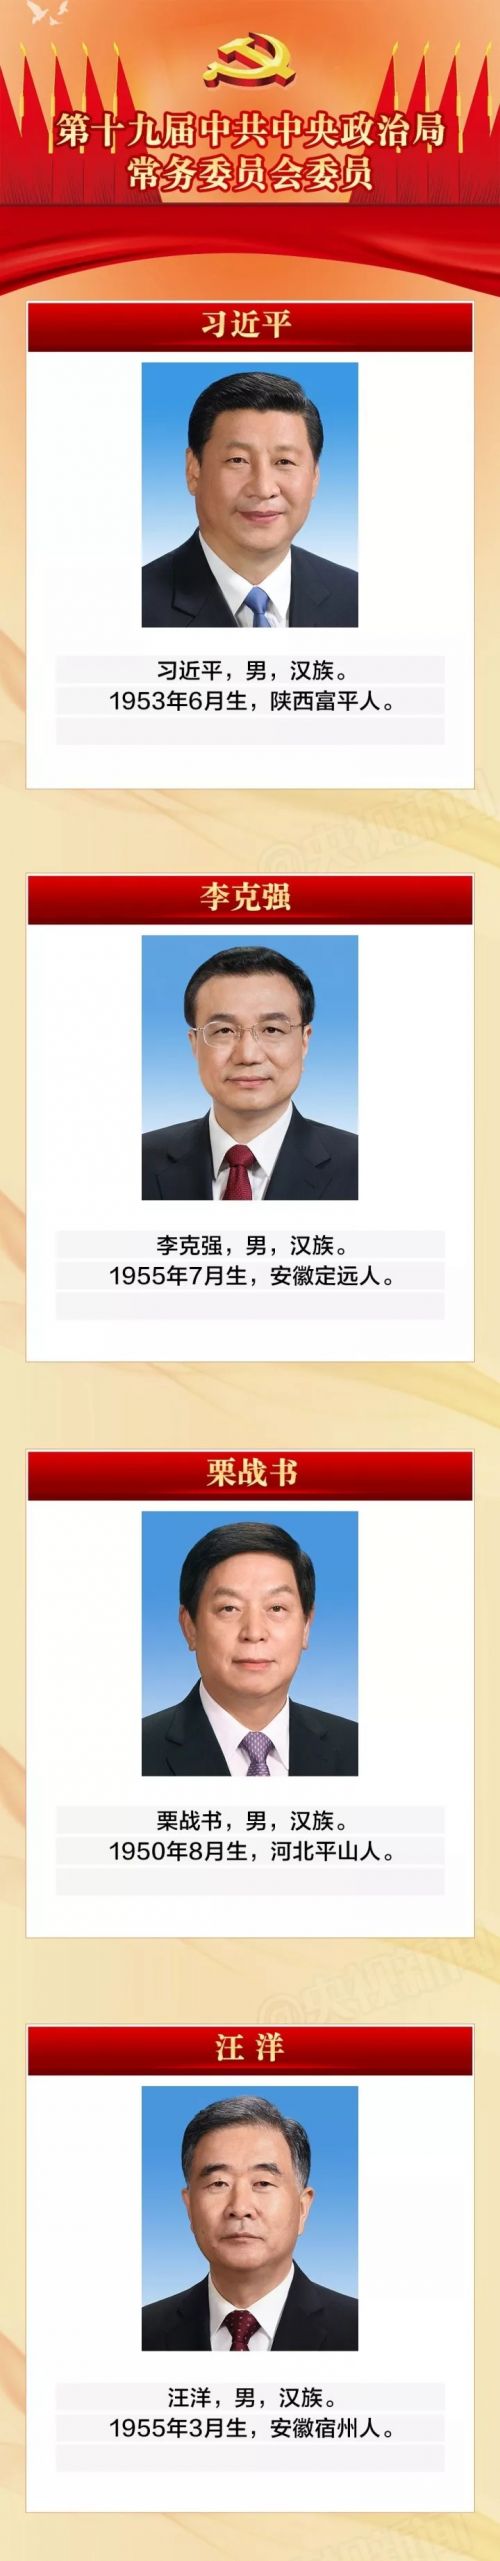 新一届中央政治局常委正式亮相